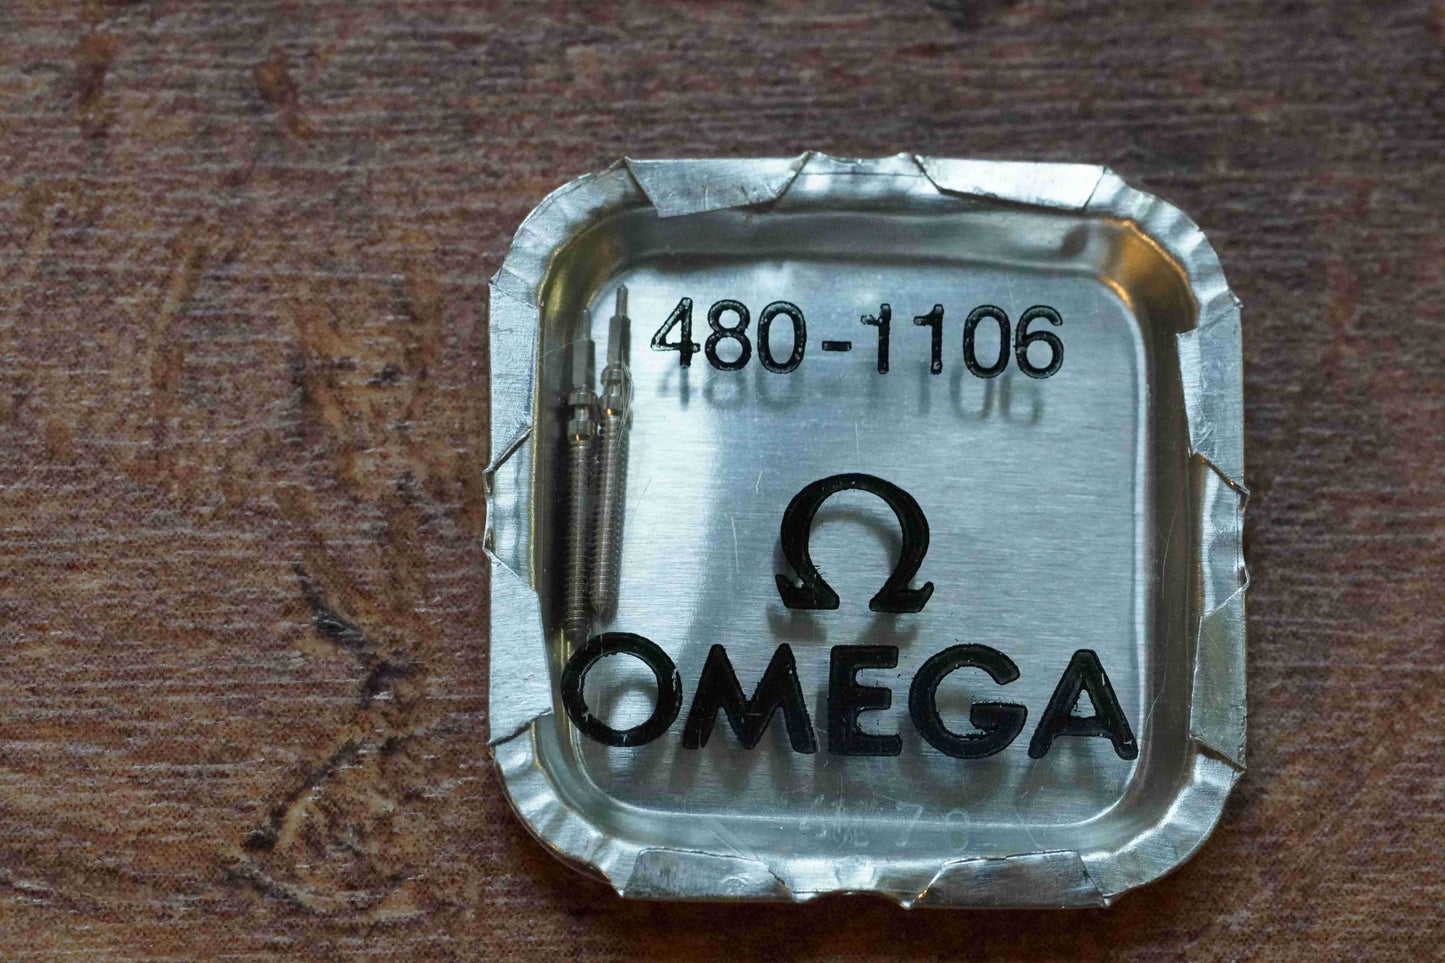 Omega cal 480 part 1106 Winding stem